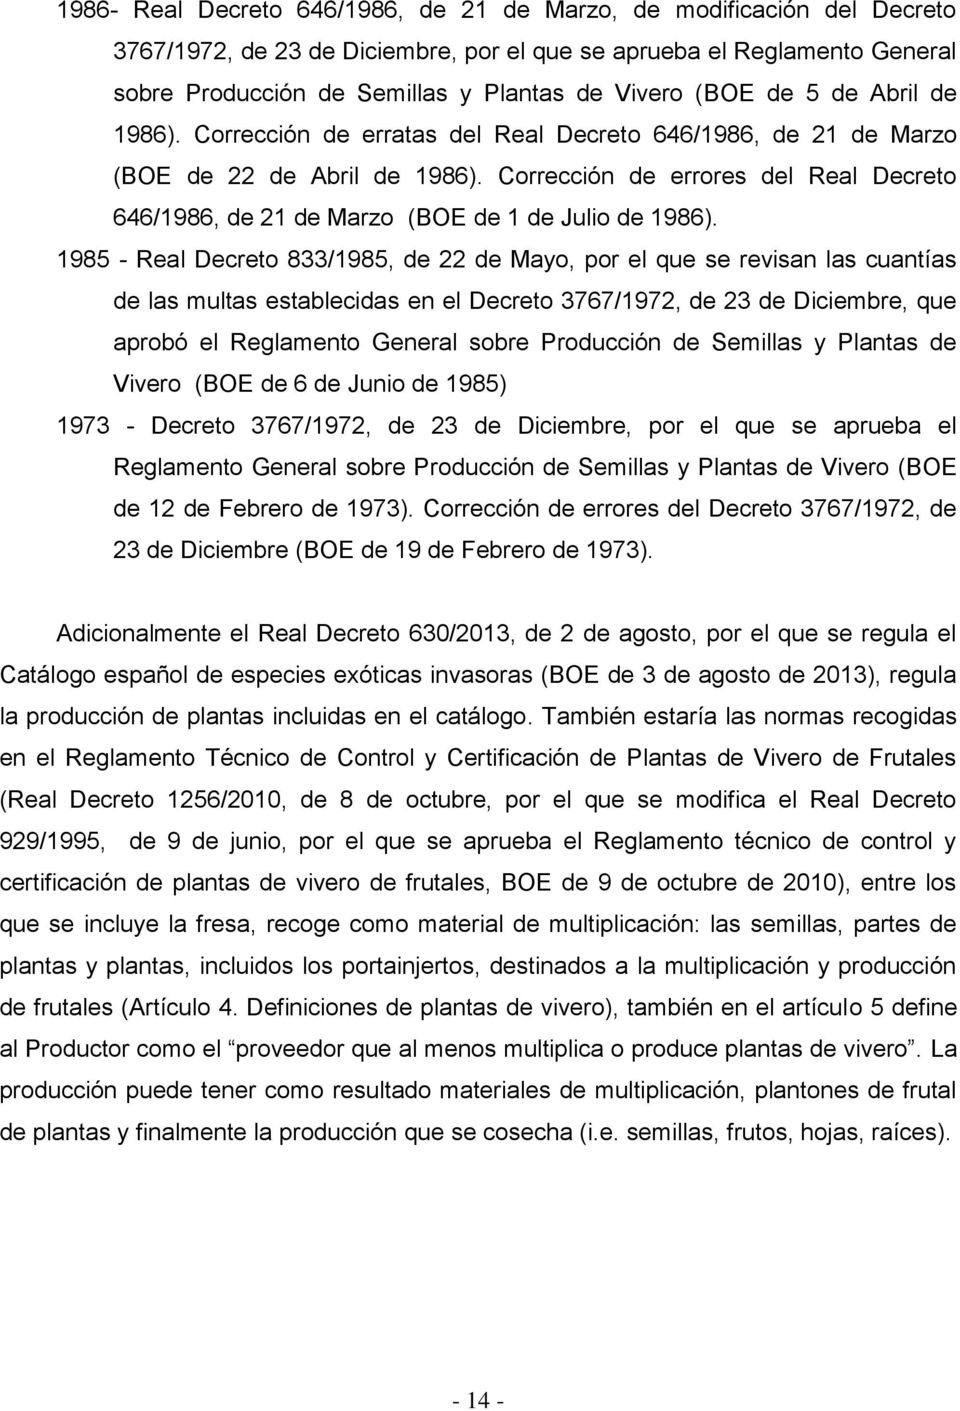 Corrección de errores del Real Decreto 646/1986, de 21 de Marzo (BOE de 1 de Julio de 1986).